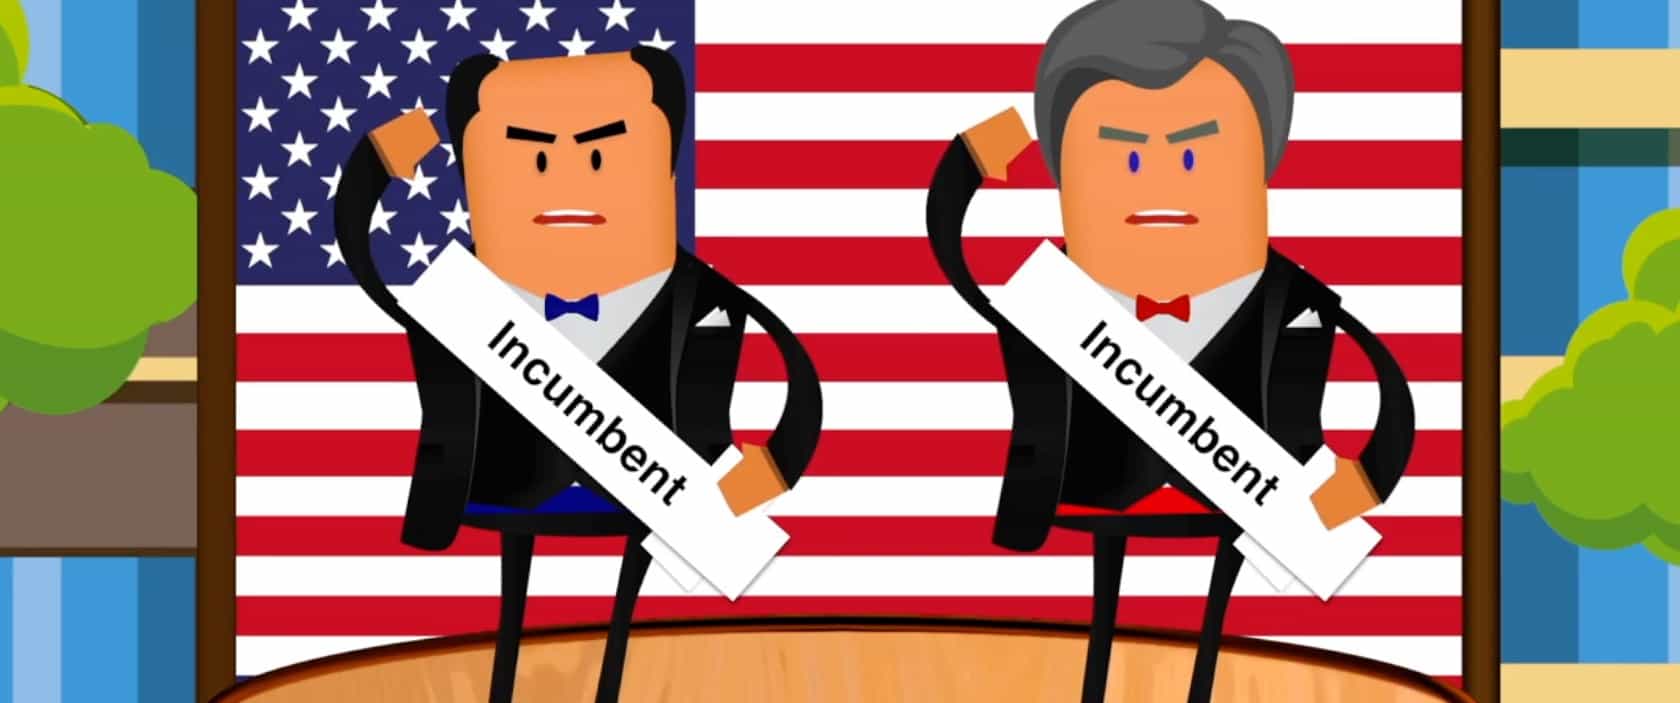 Кейс 2д анимации" Коалиция политических реформ"